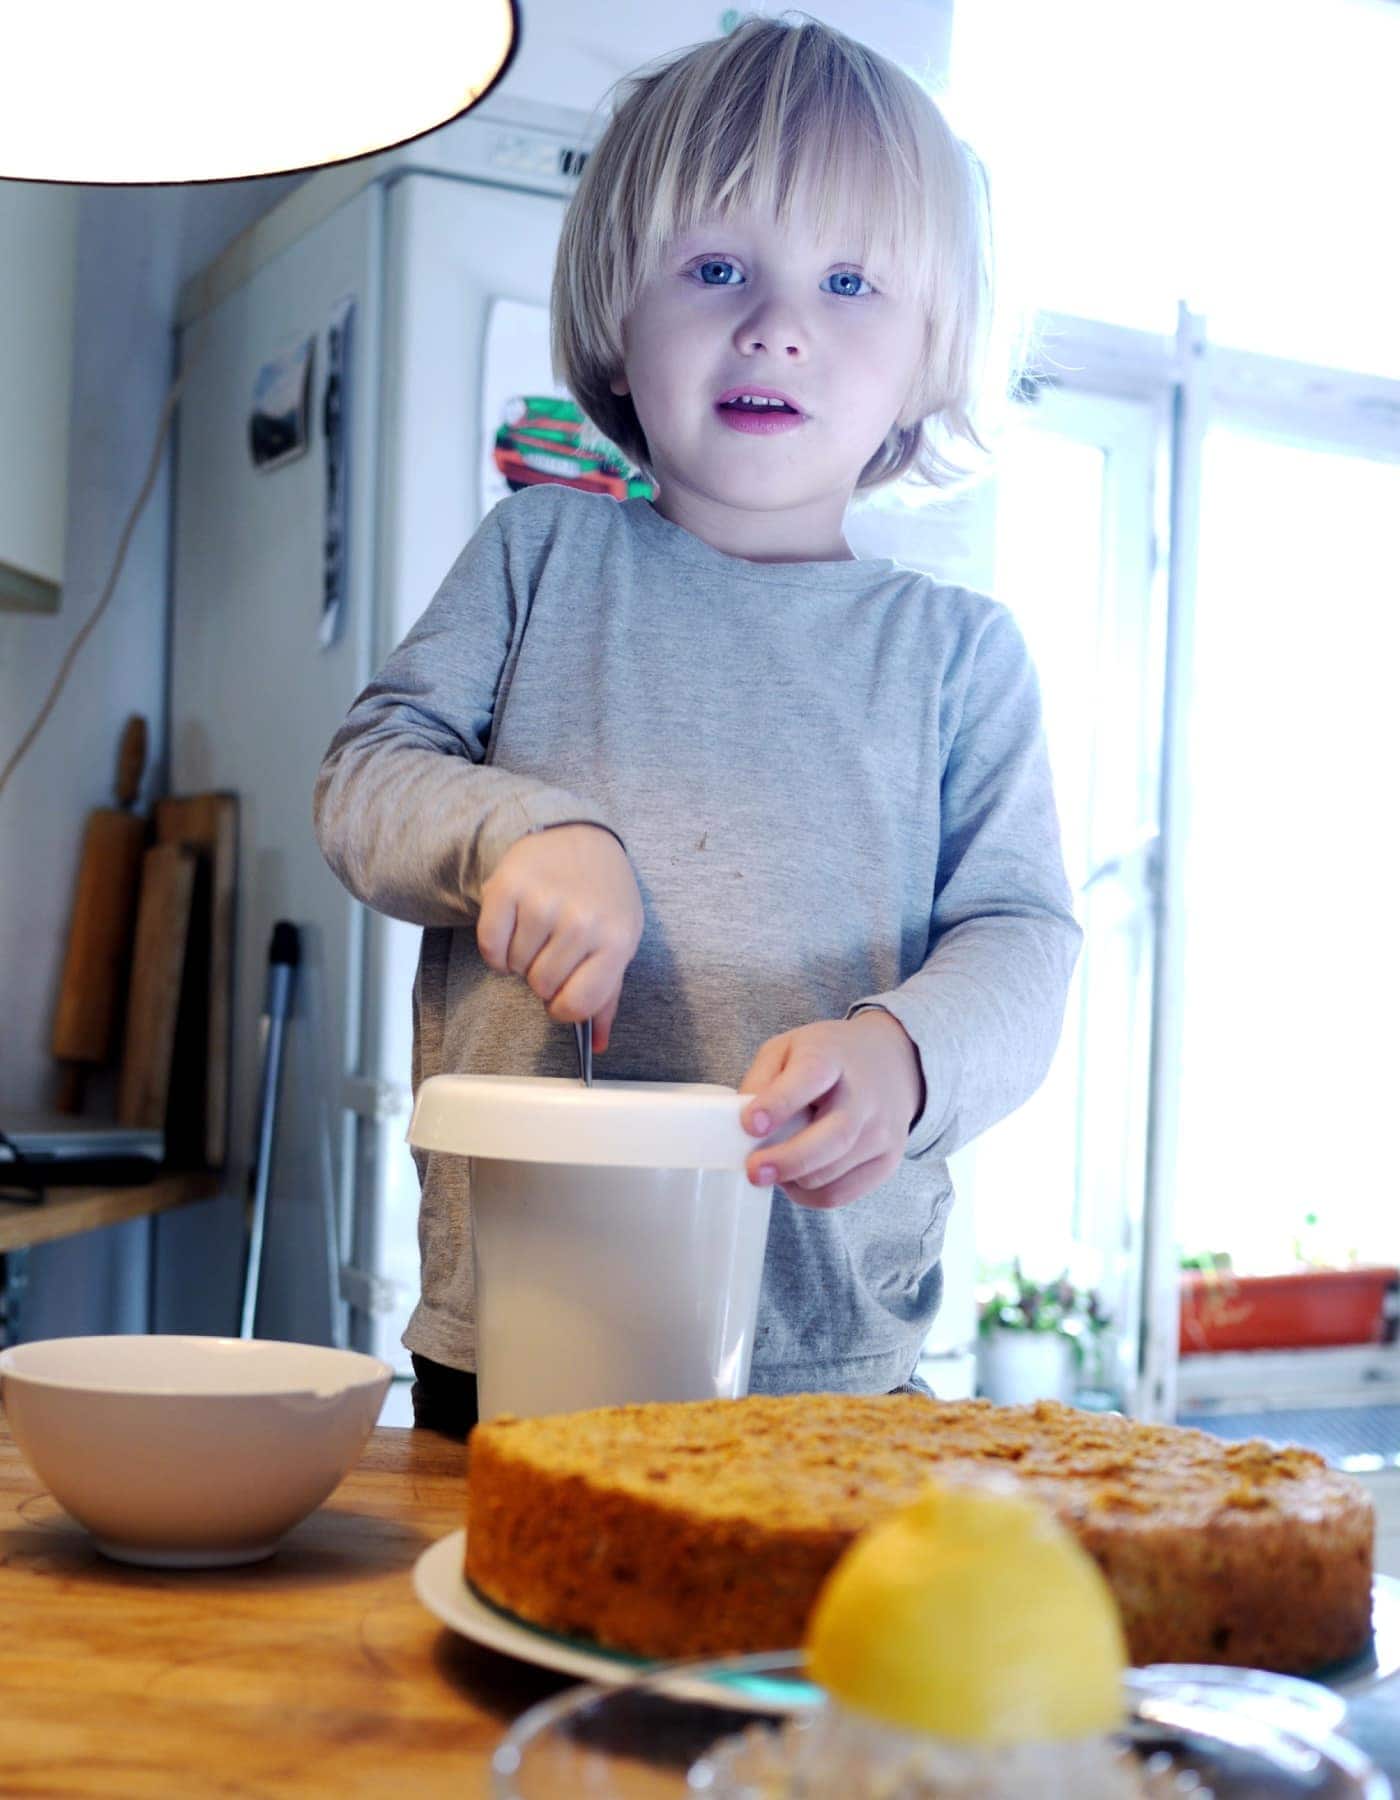 Milchfreier Geburtstagskuchen für Kinder: Saftiger Karottenkuchen mit Zitronenguss – Rezept // HIMBEER